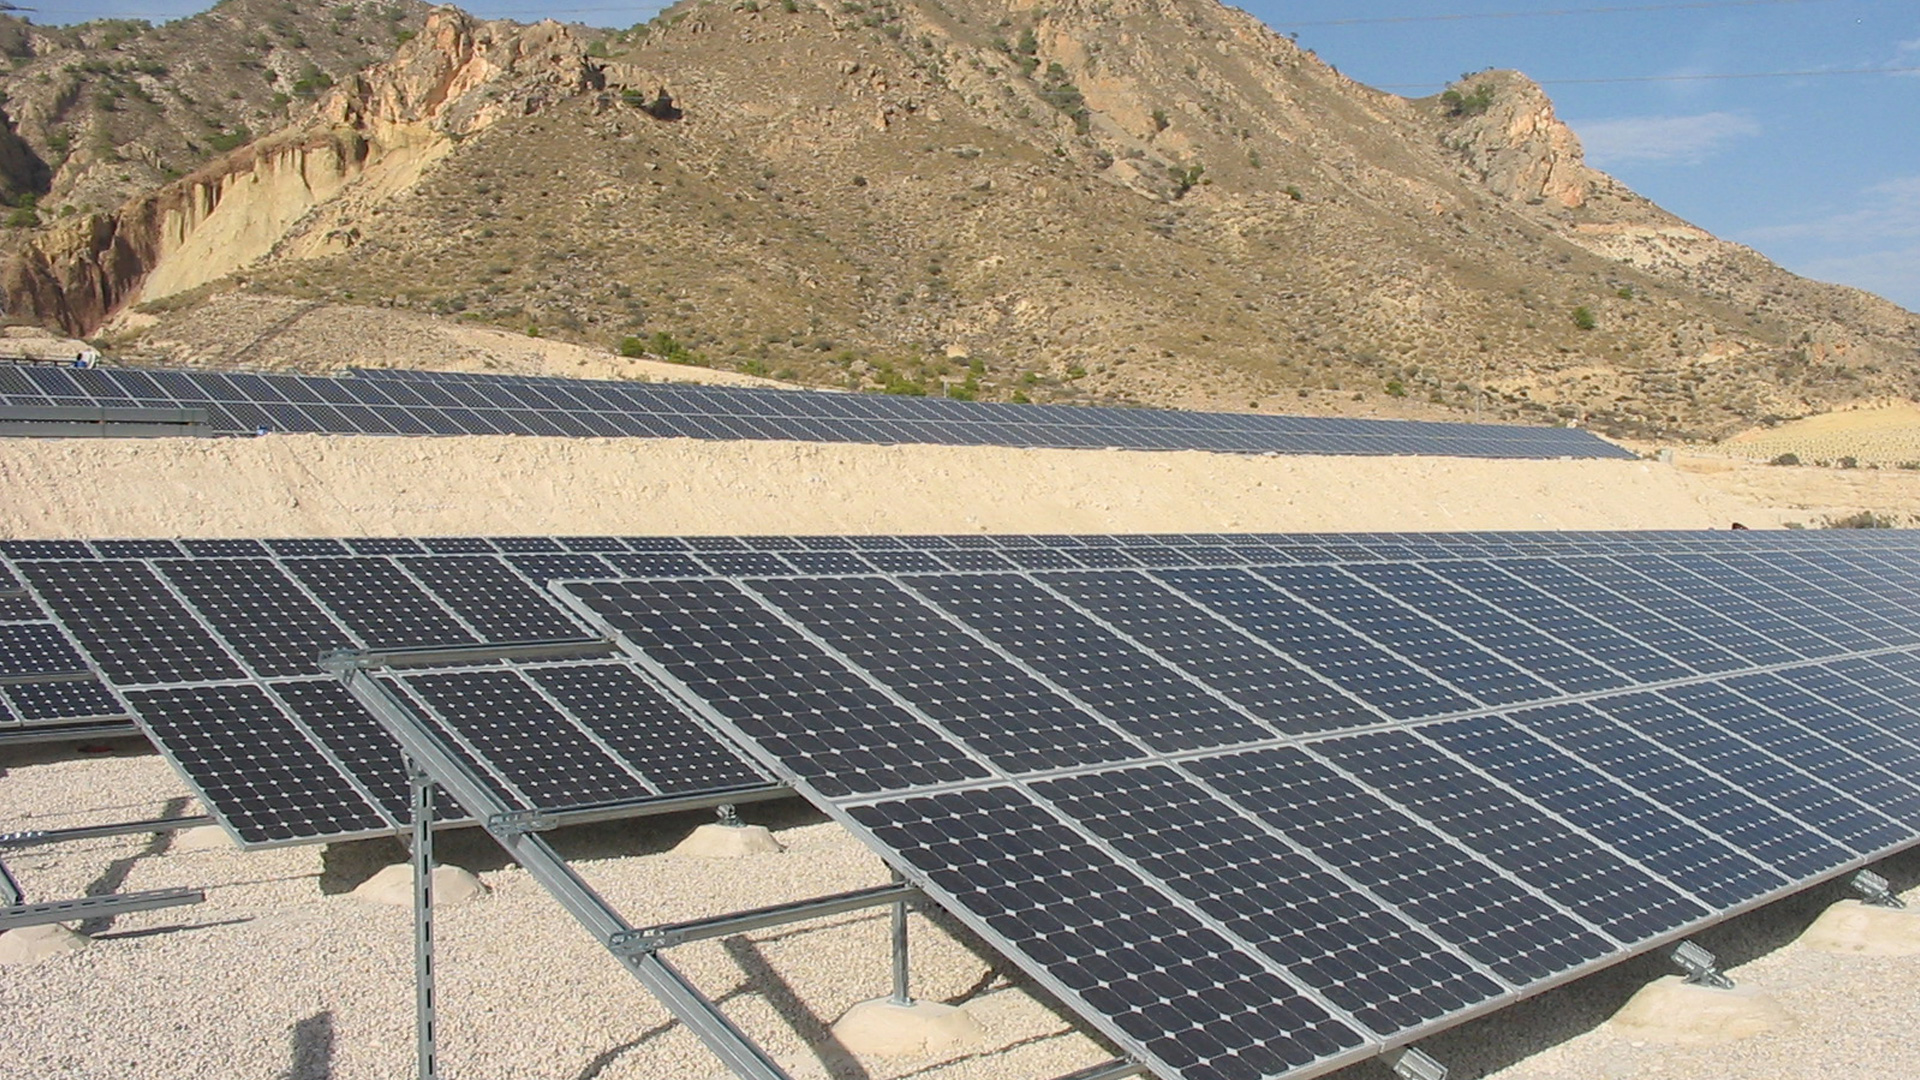 Instalación fotovoltaica para autoconsumo industrial montada sobre suelo